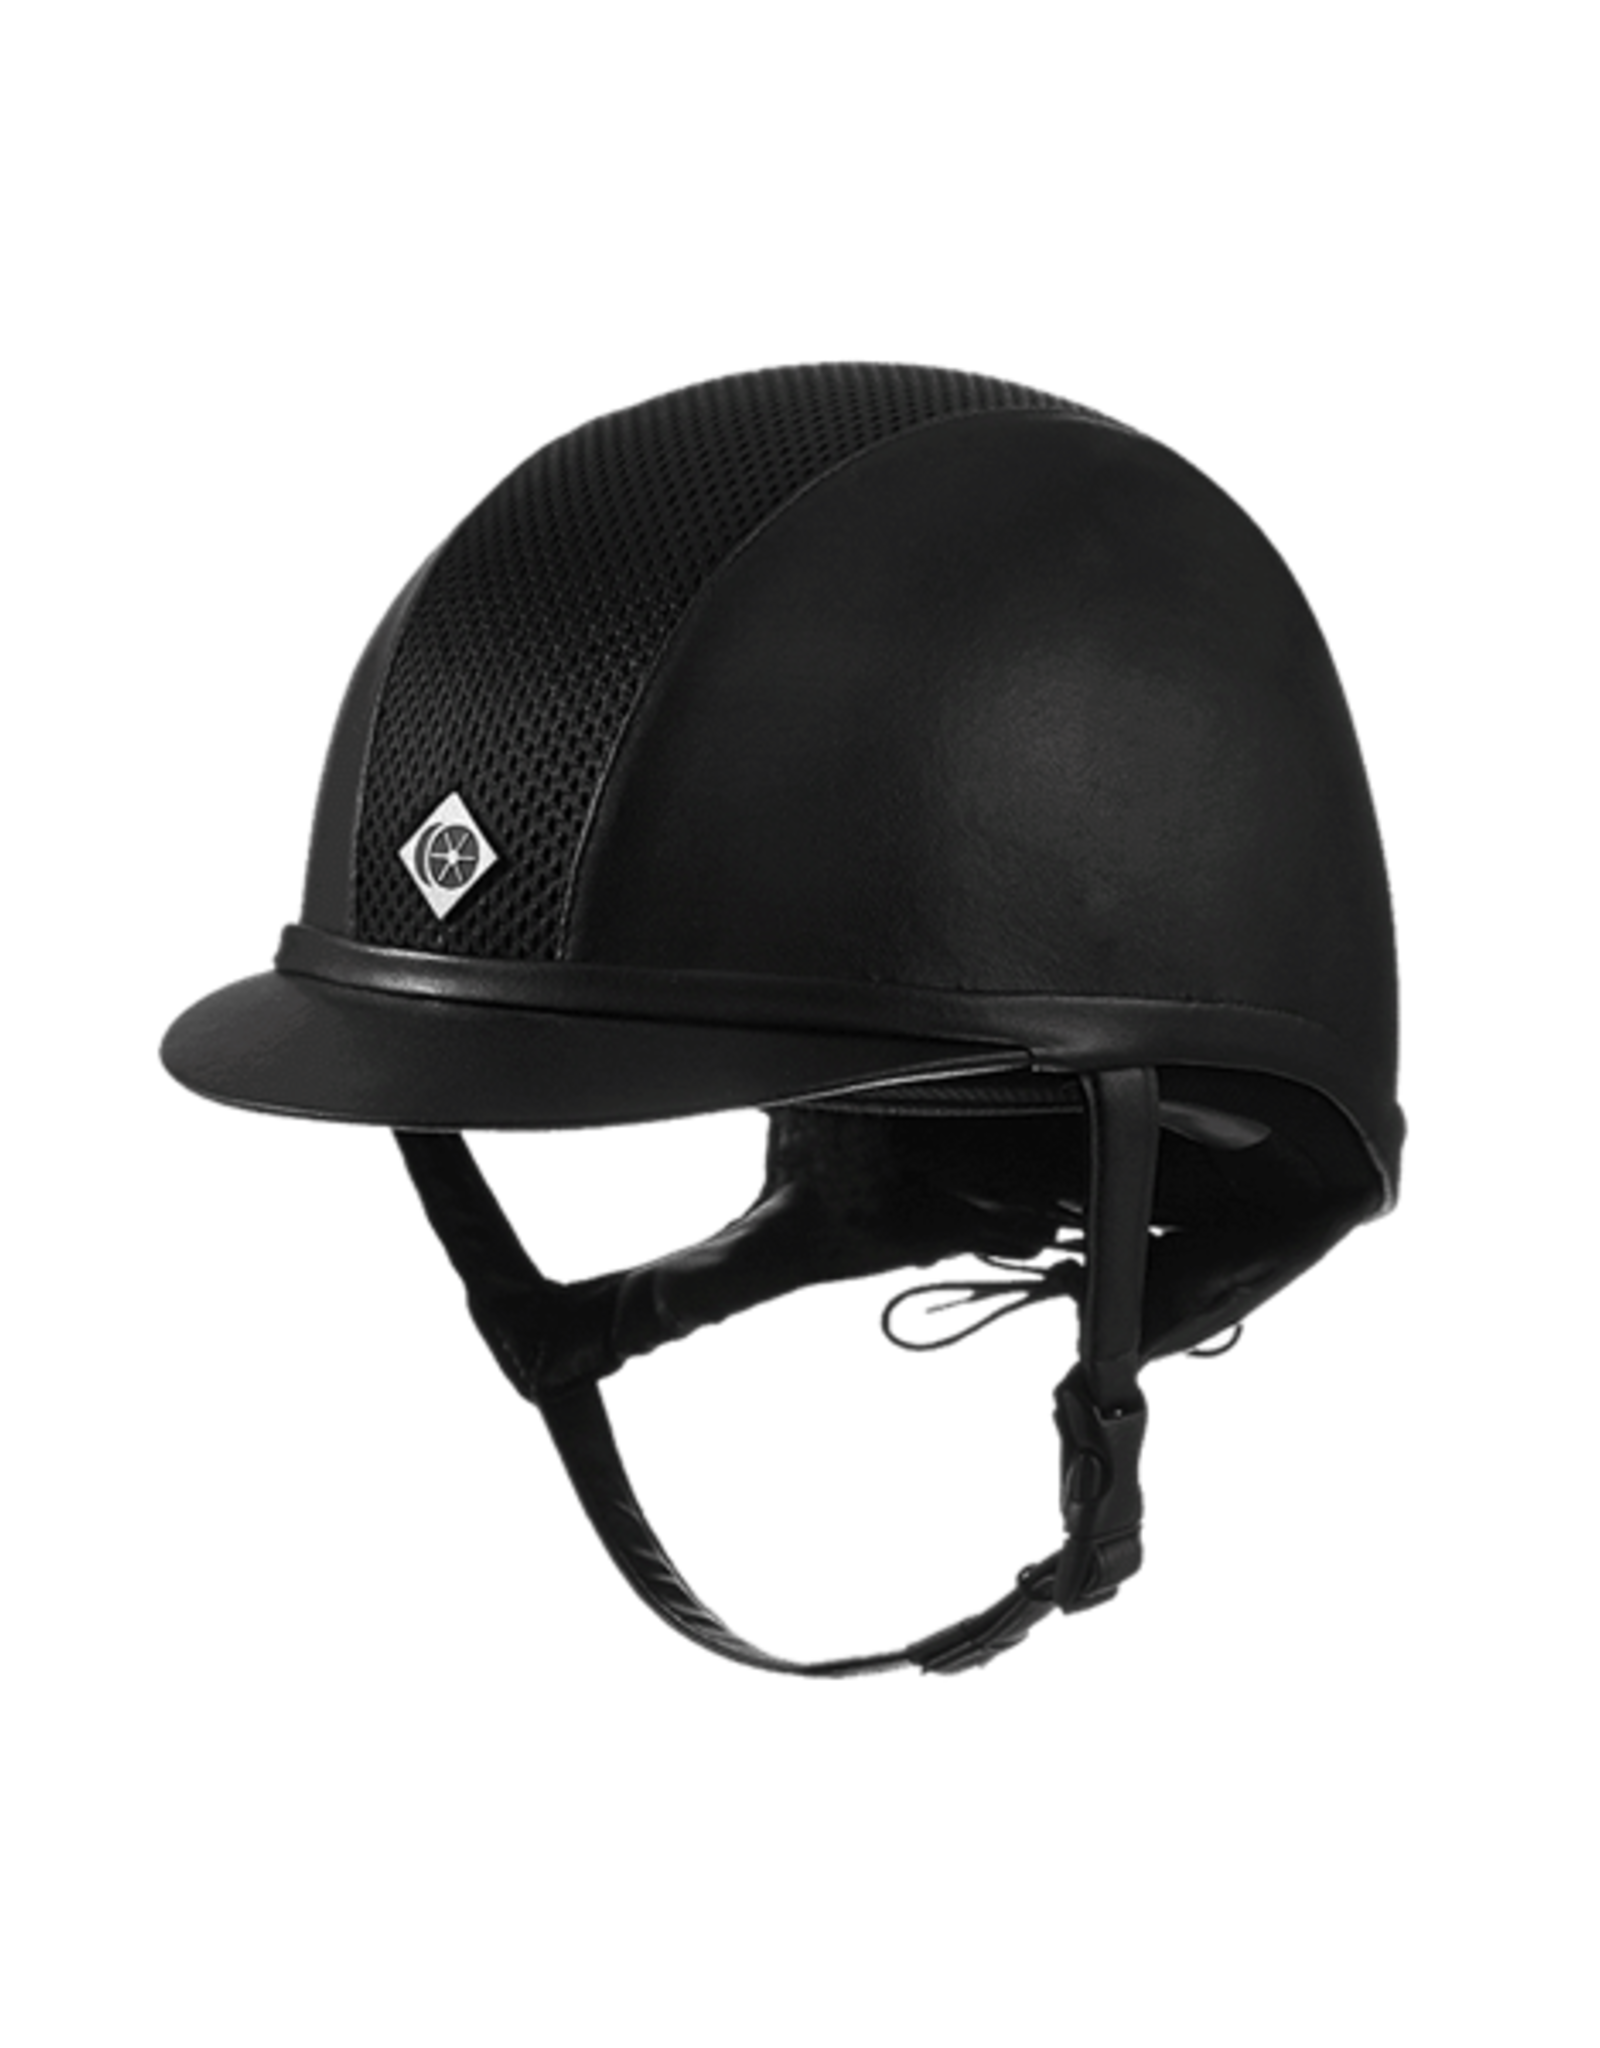 Charles Owen AYR8 Plus Leather Look Helmet